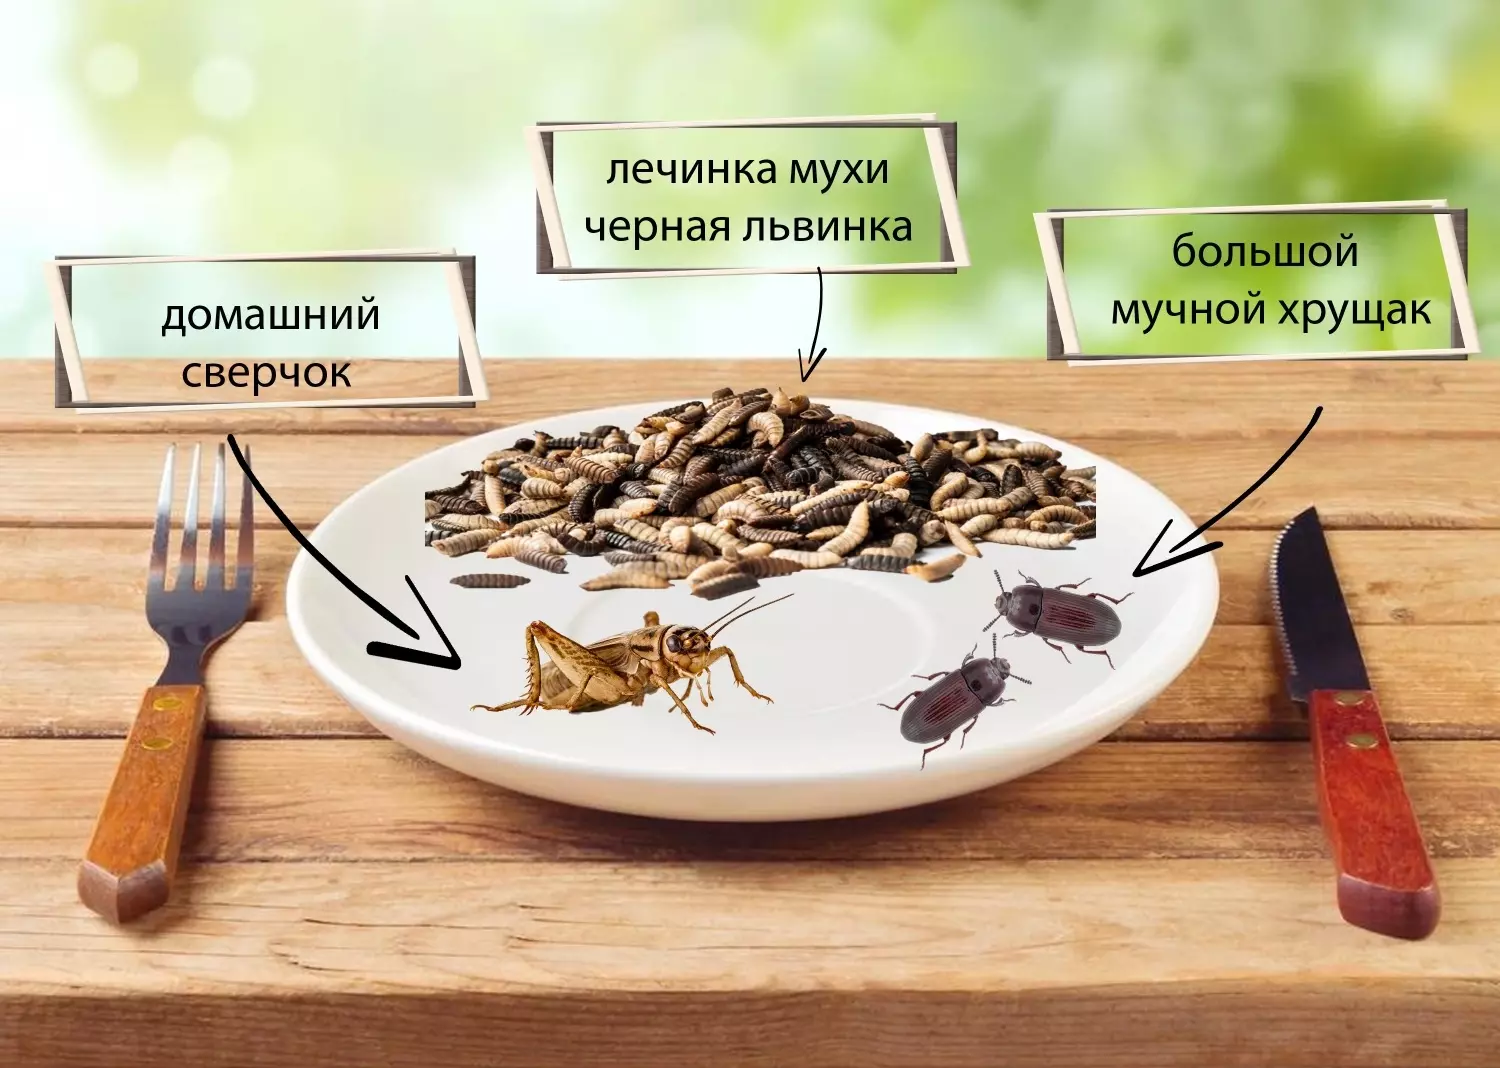 Каких насекомых чаще всего употребляют в пищу?